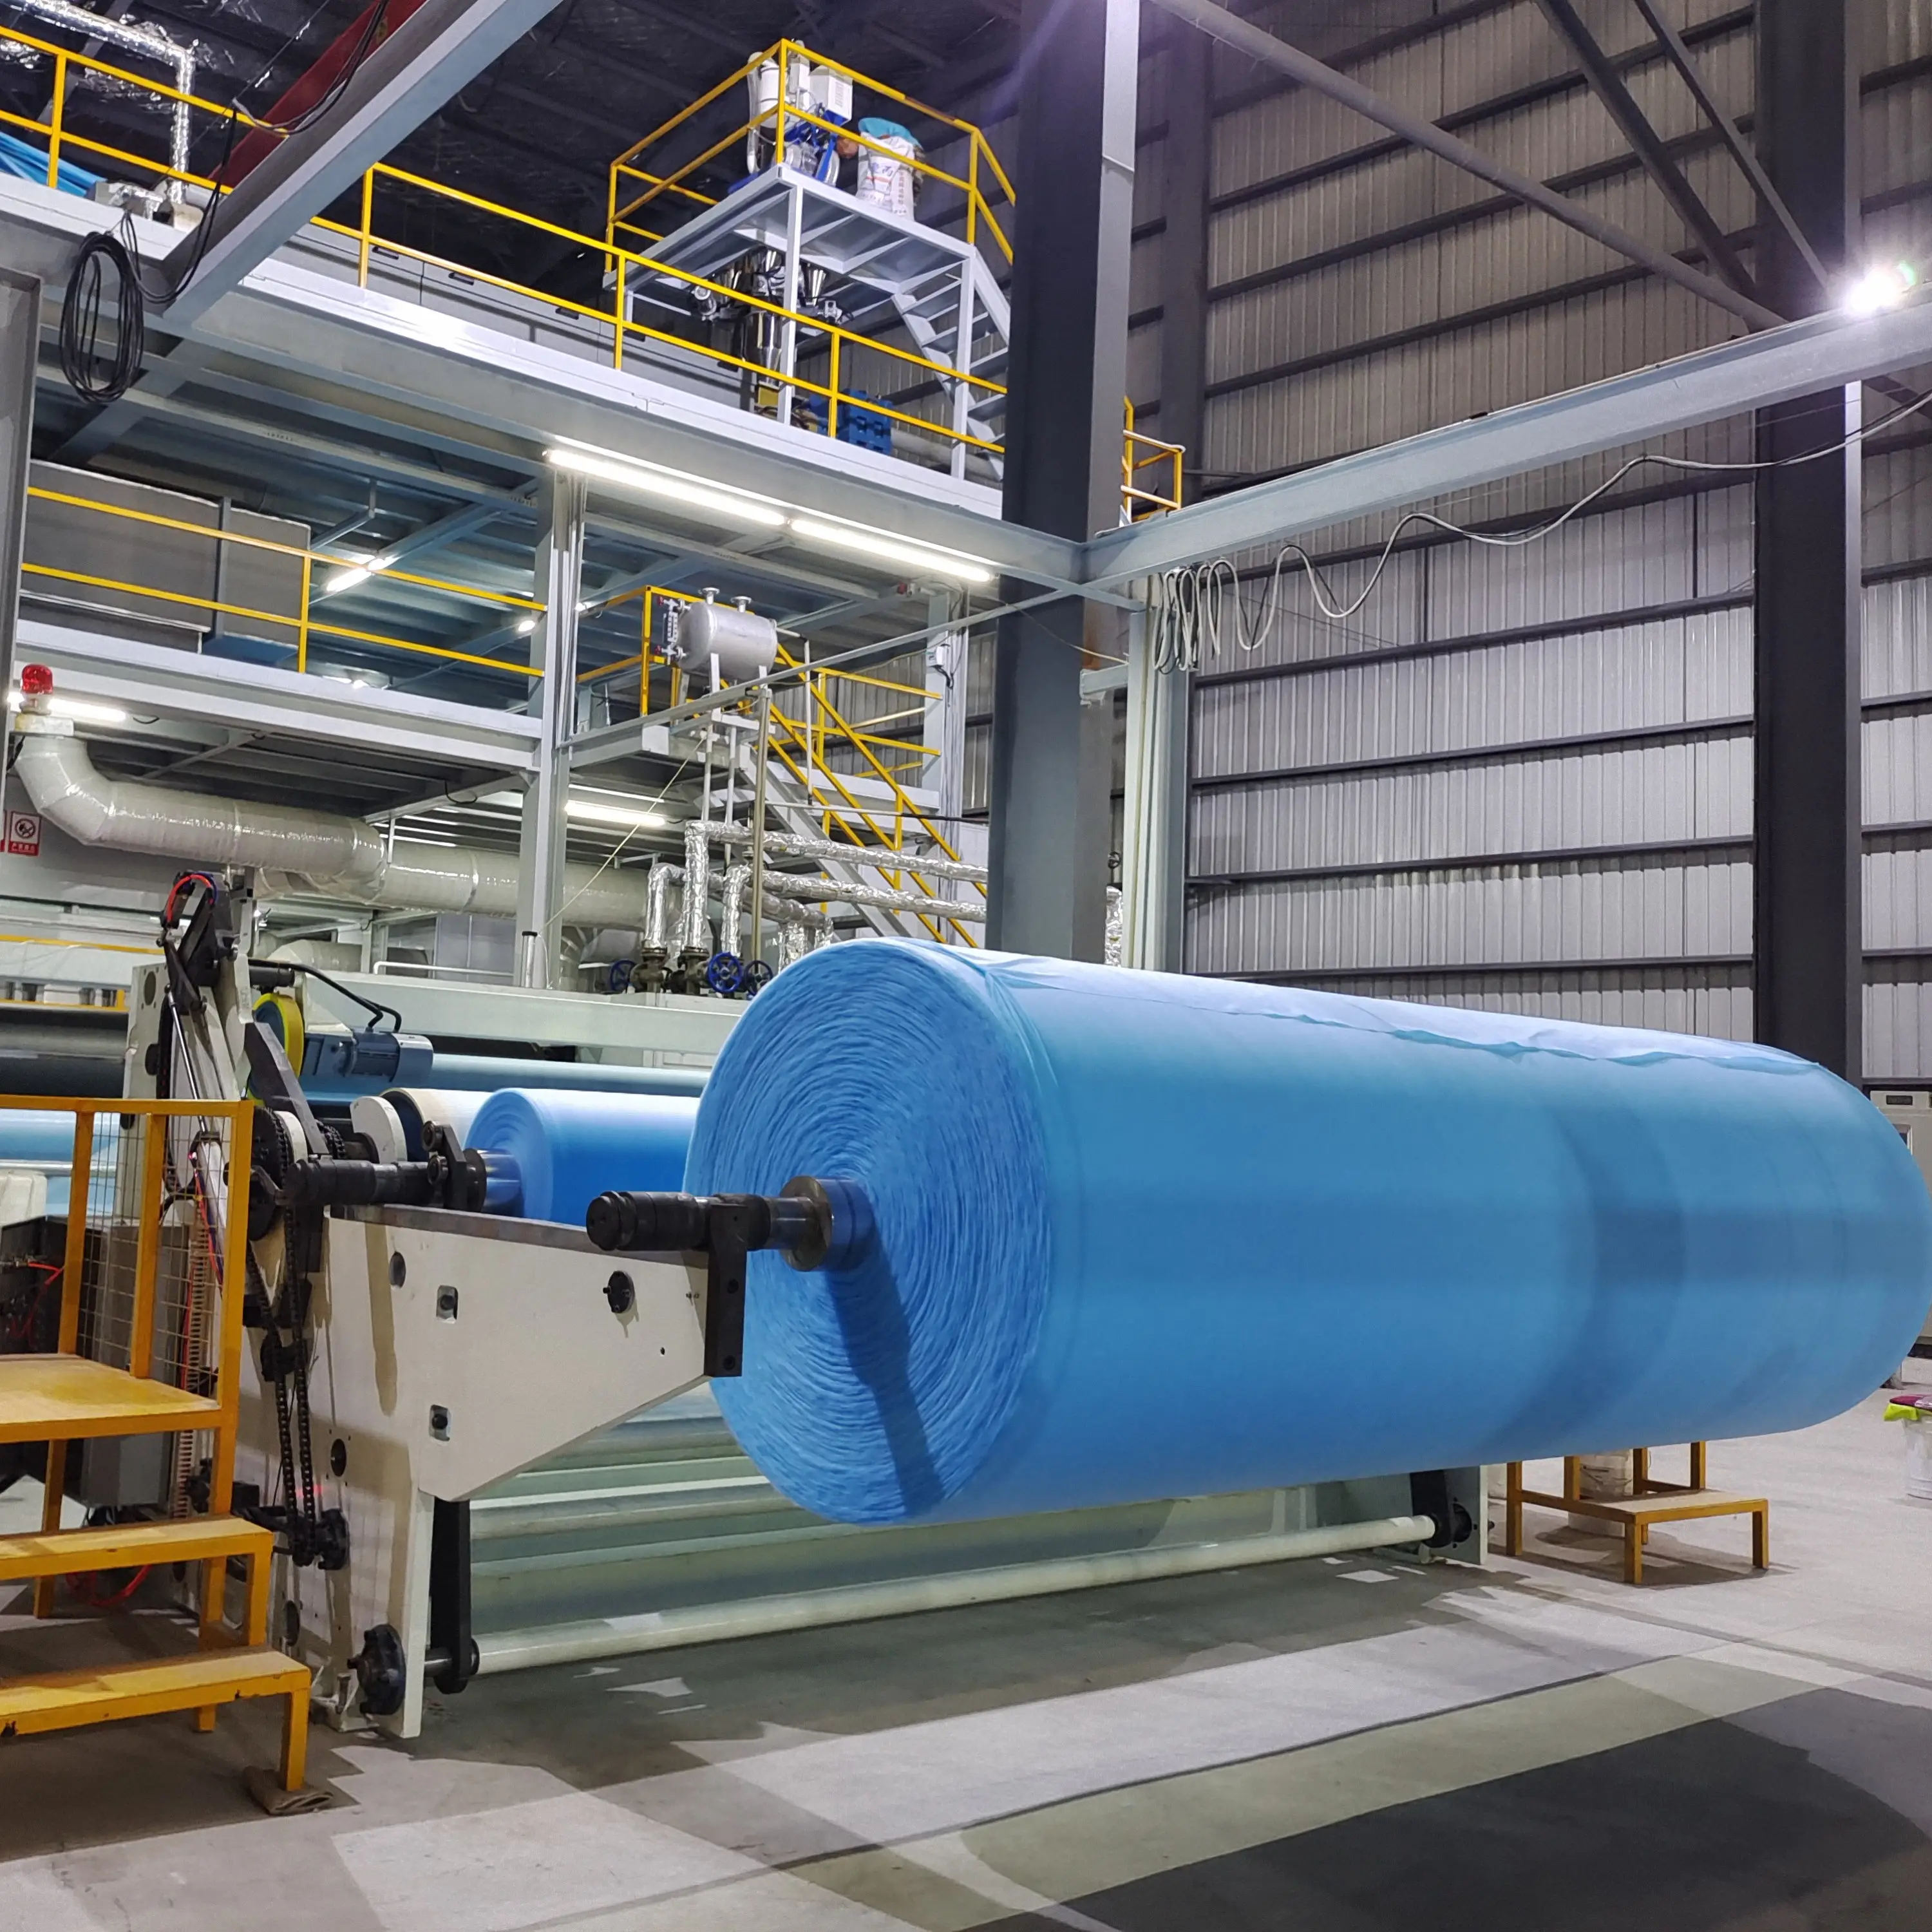 Zuverlässige Produktions linien für Vliesstoffe Maschinen zur Herstellung von Vliesstoffen Spinning Spunbond Melt blown Production System